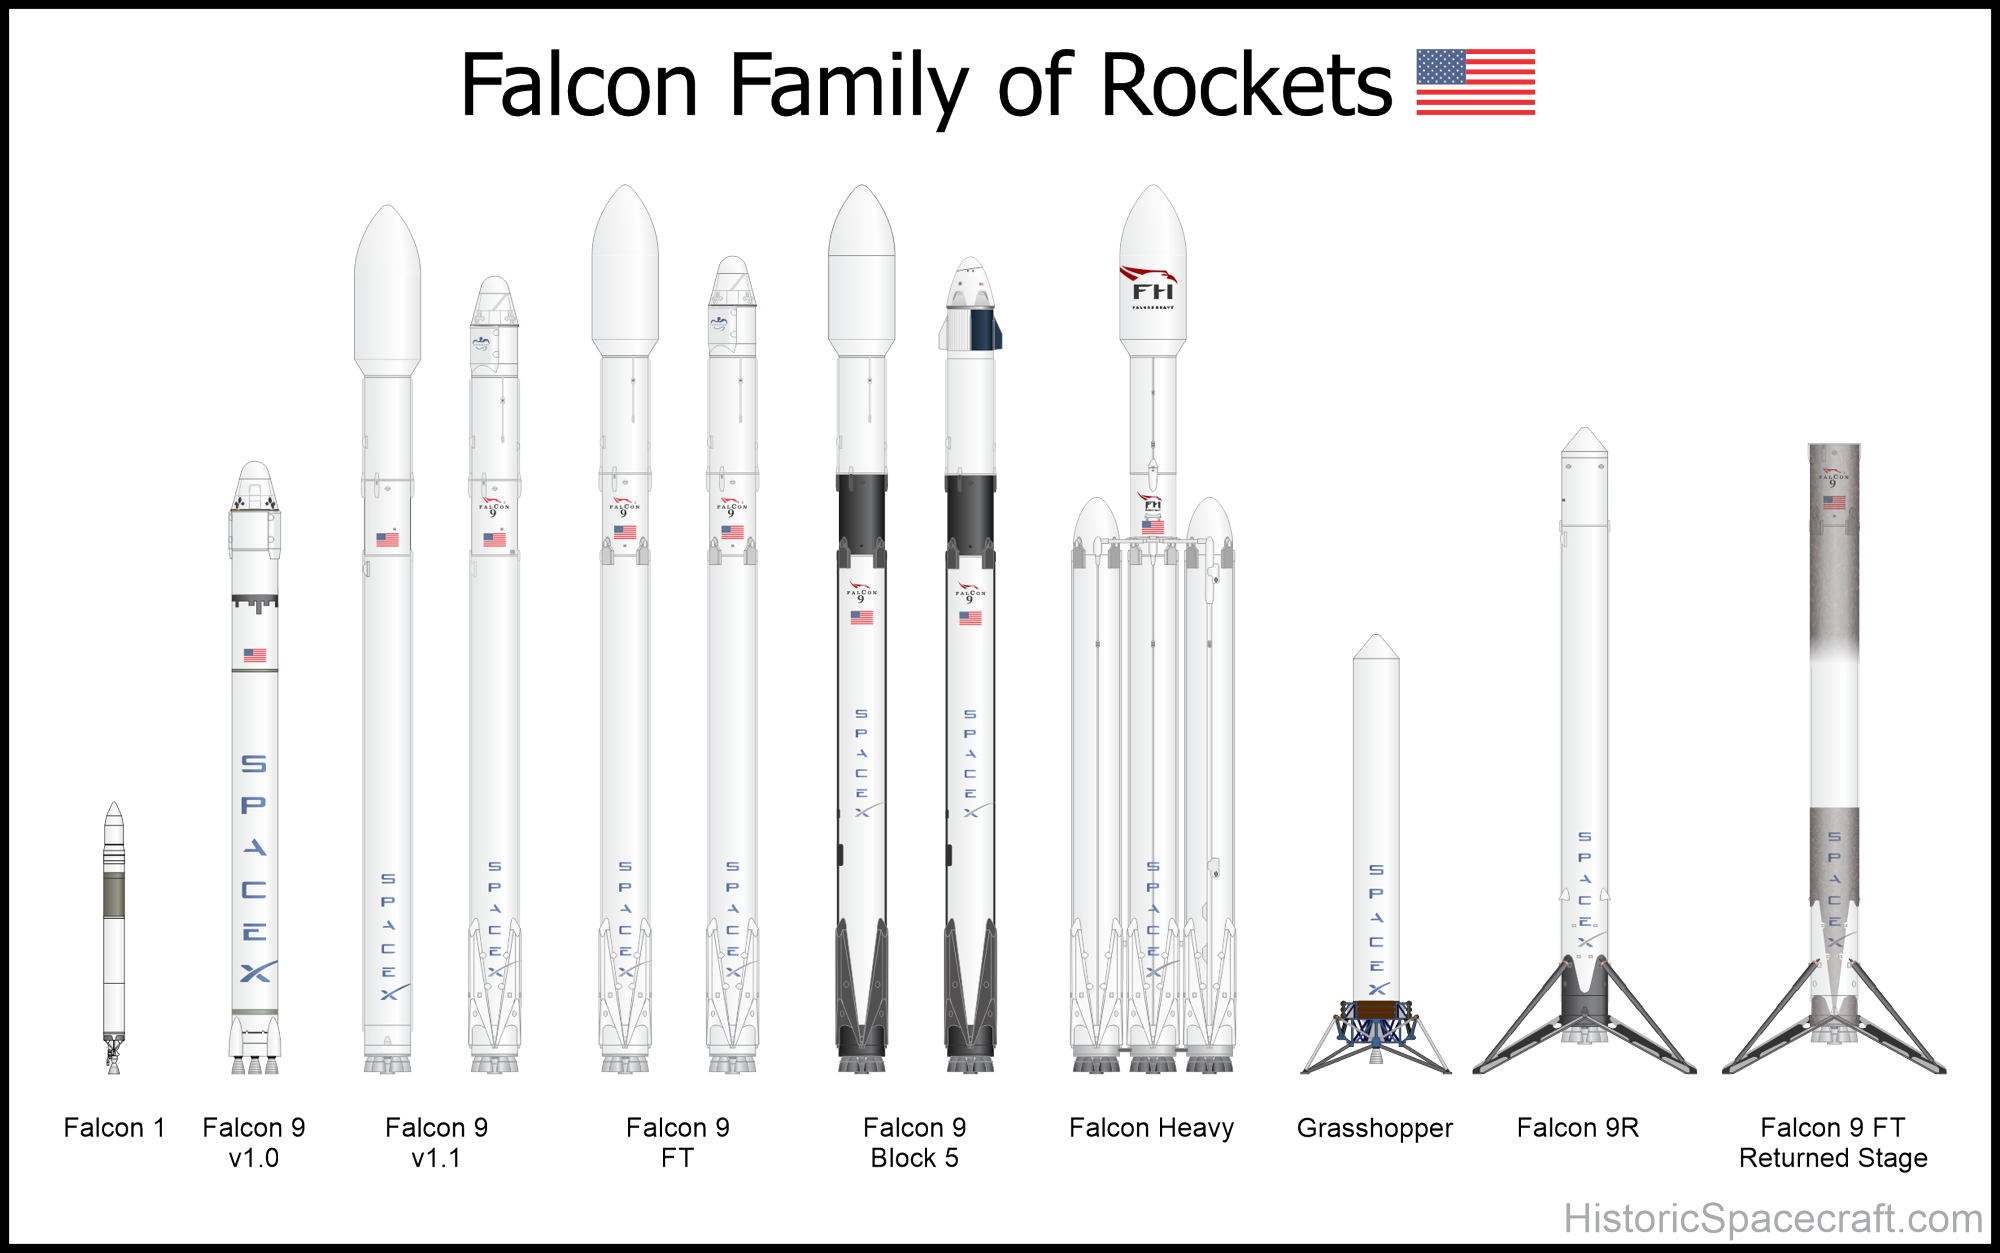 SpaceX Falcon 9